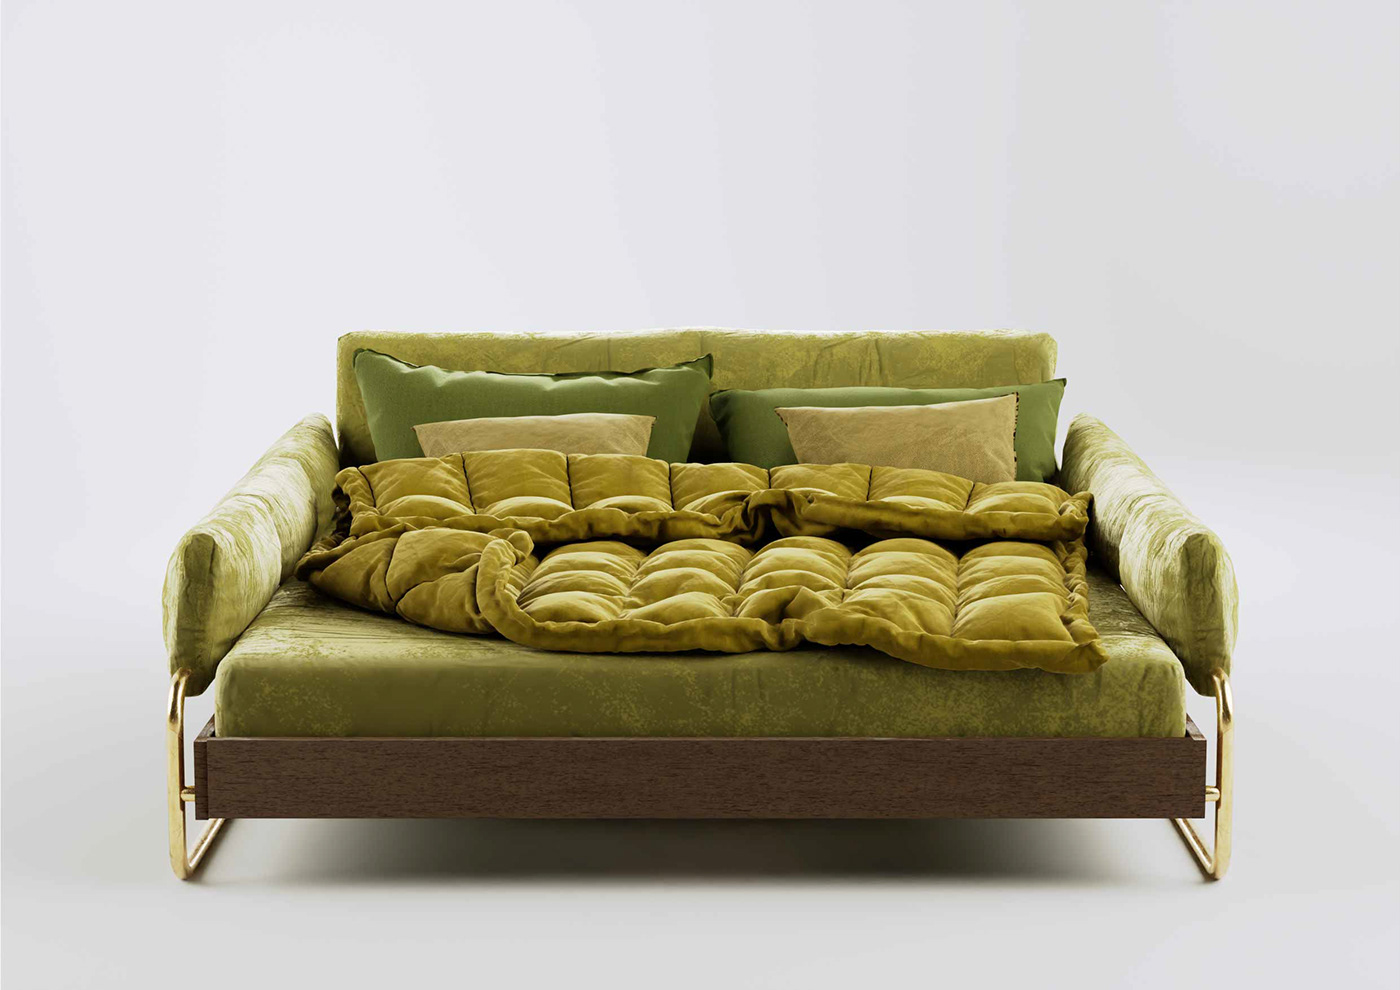 bed concept design furniture interior design 